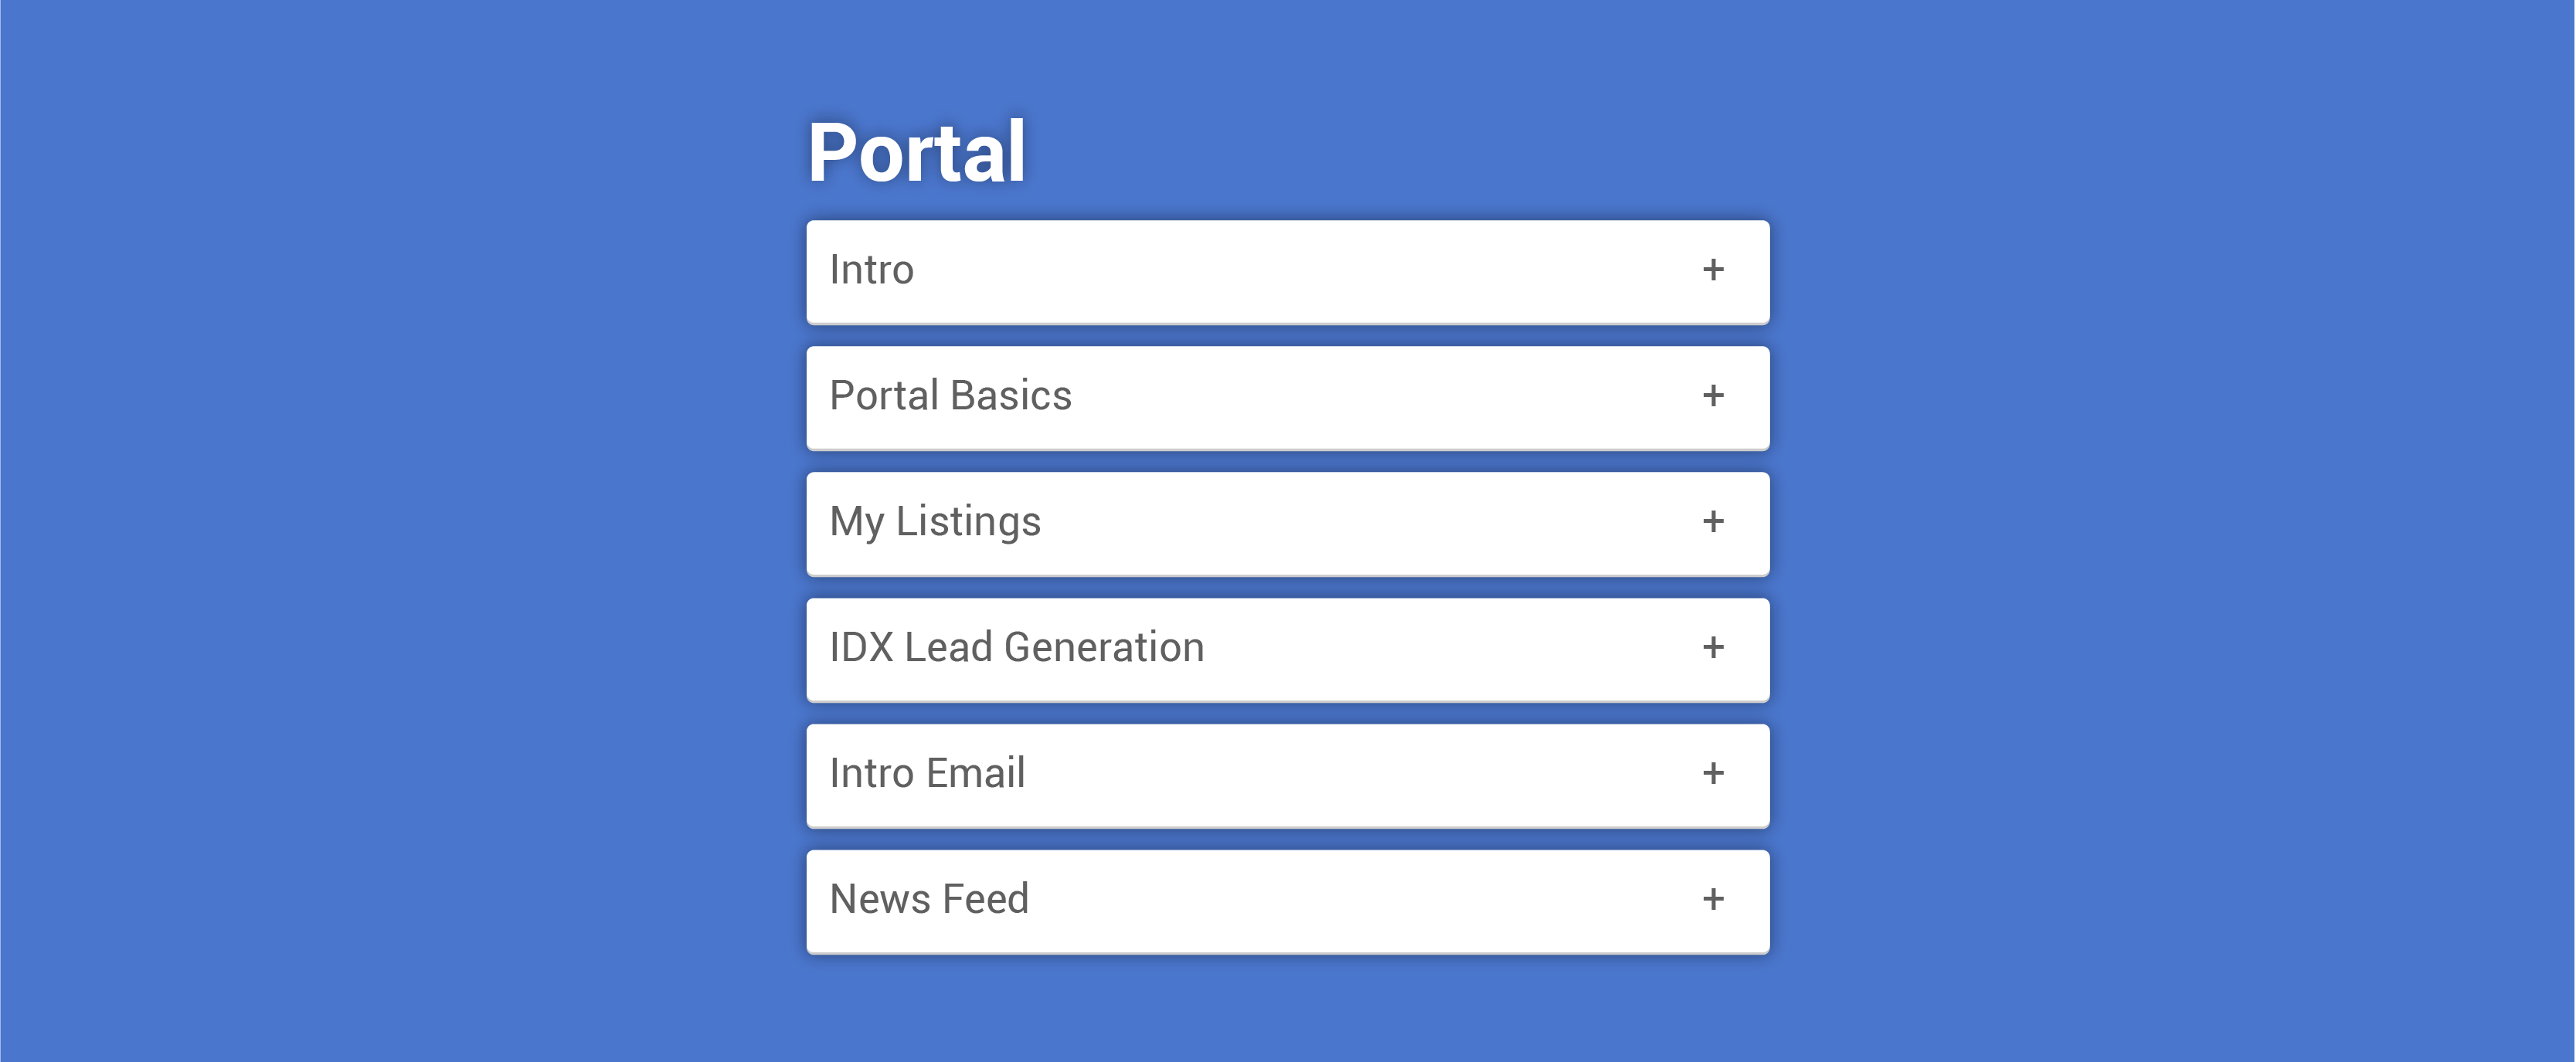 Flexmls_Help_Headers_Client_Portals.png